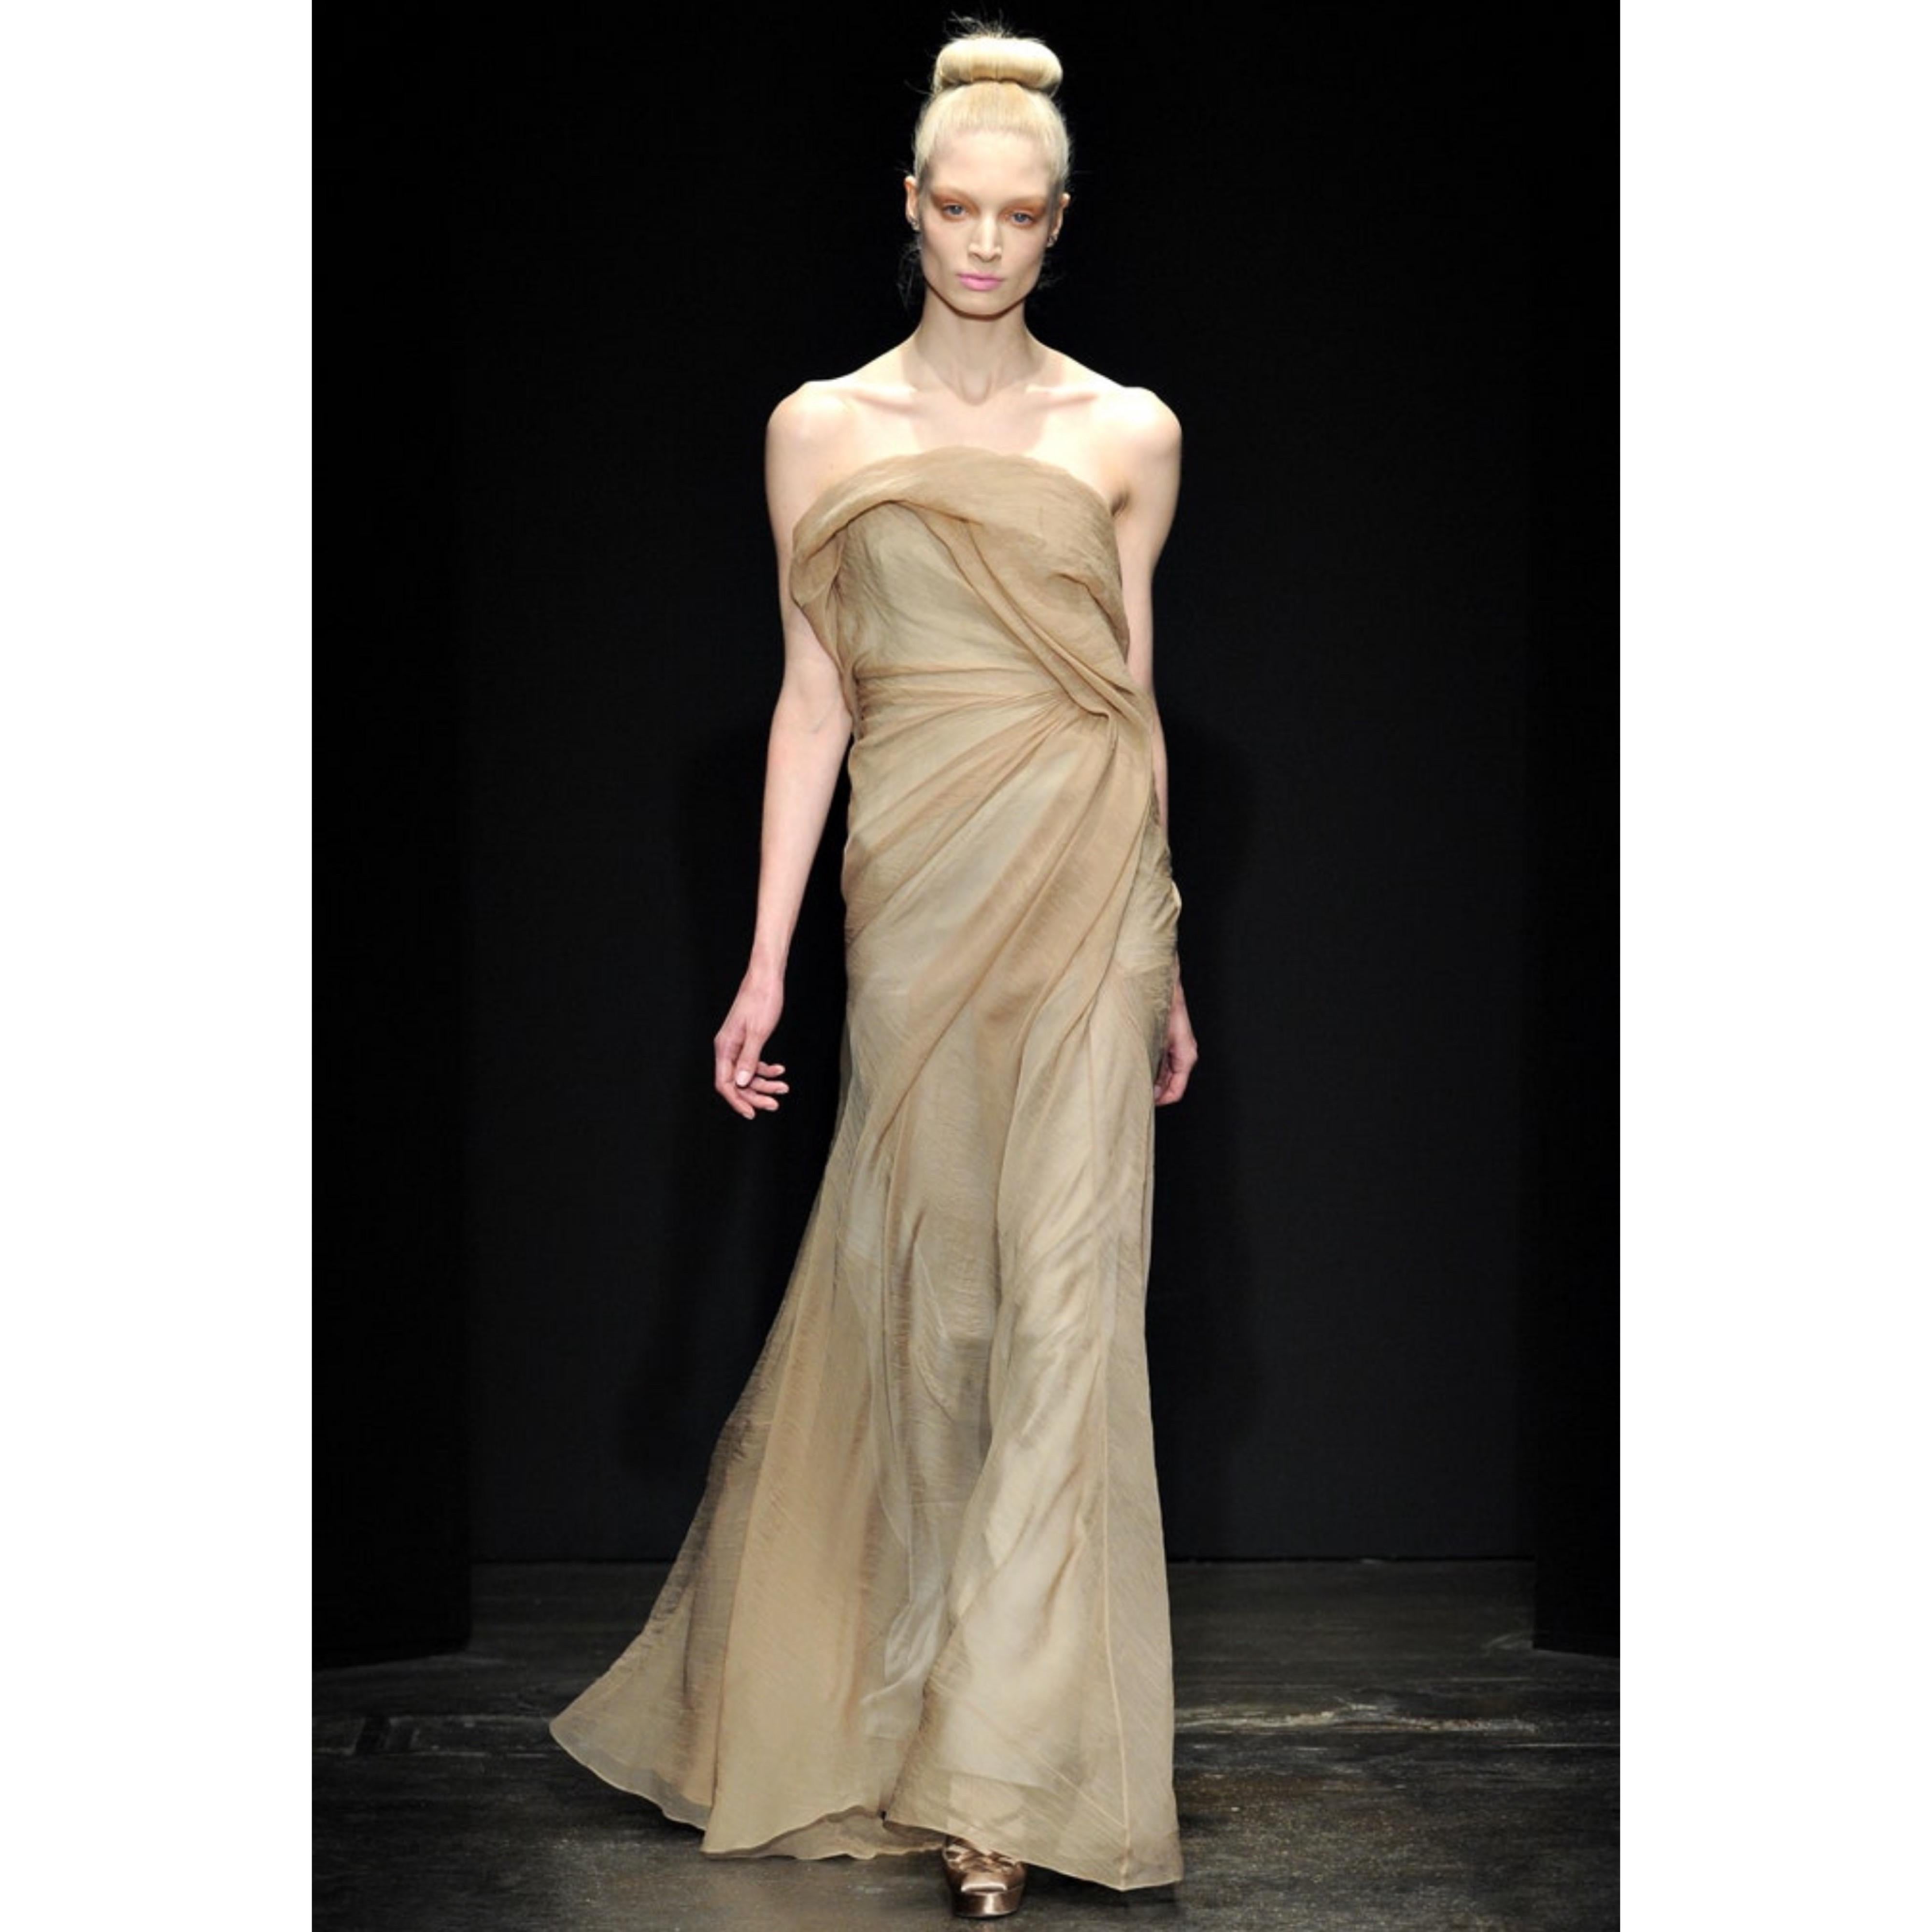 Magnifique robe bustier en organza de soie de DONNA KARAN pour le défilé de l'automne 2011 ! Il est composé du plus bel organza de soie nude, avec juste une petite quantité de reflets dorés. Le corsage osseux maintient le tout en place. Fermeture à